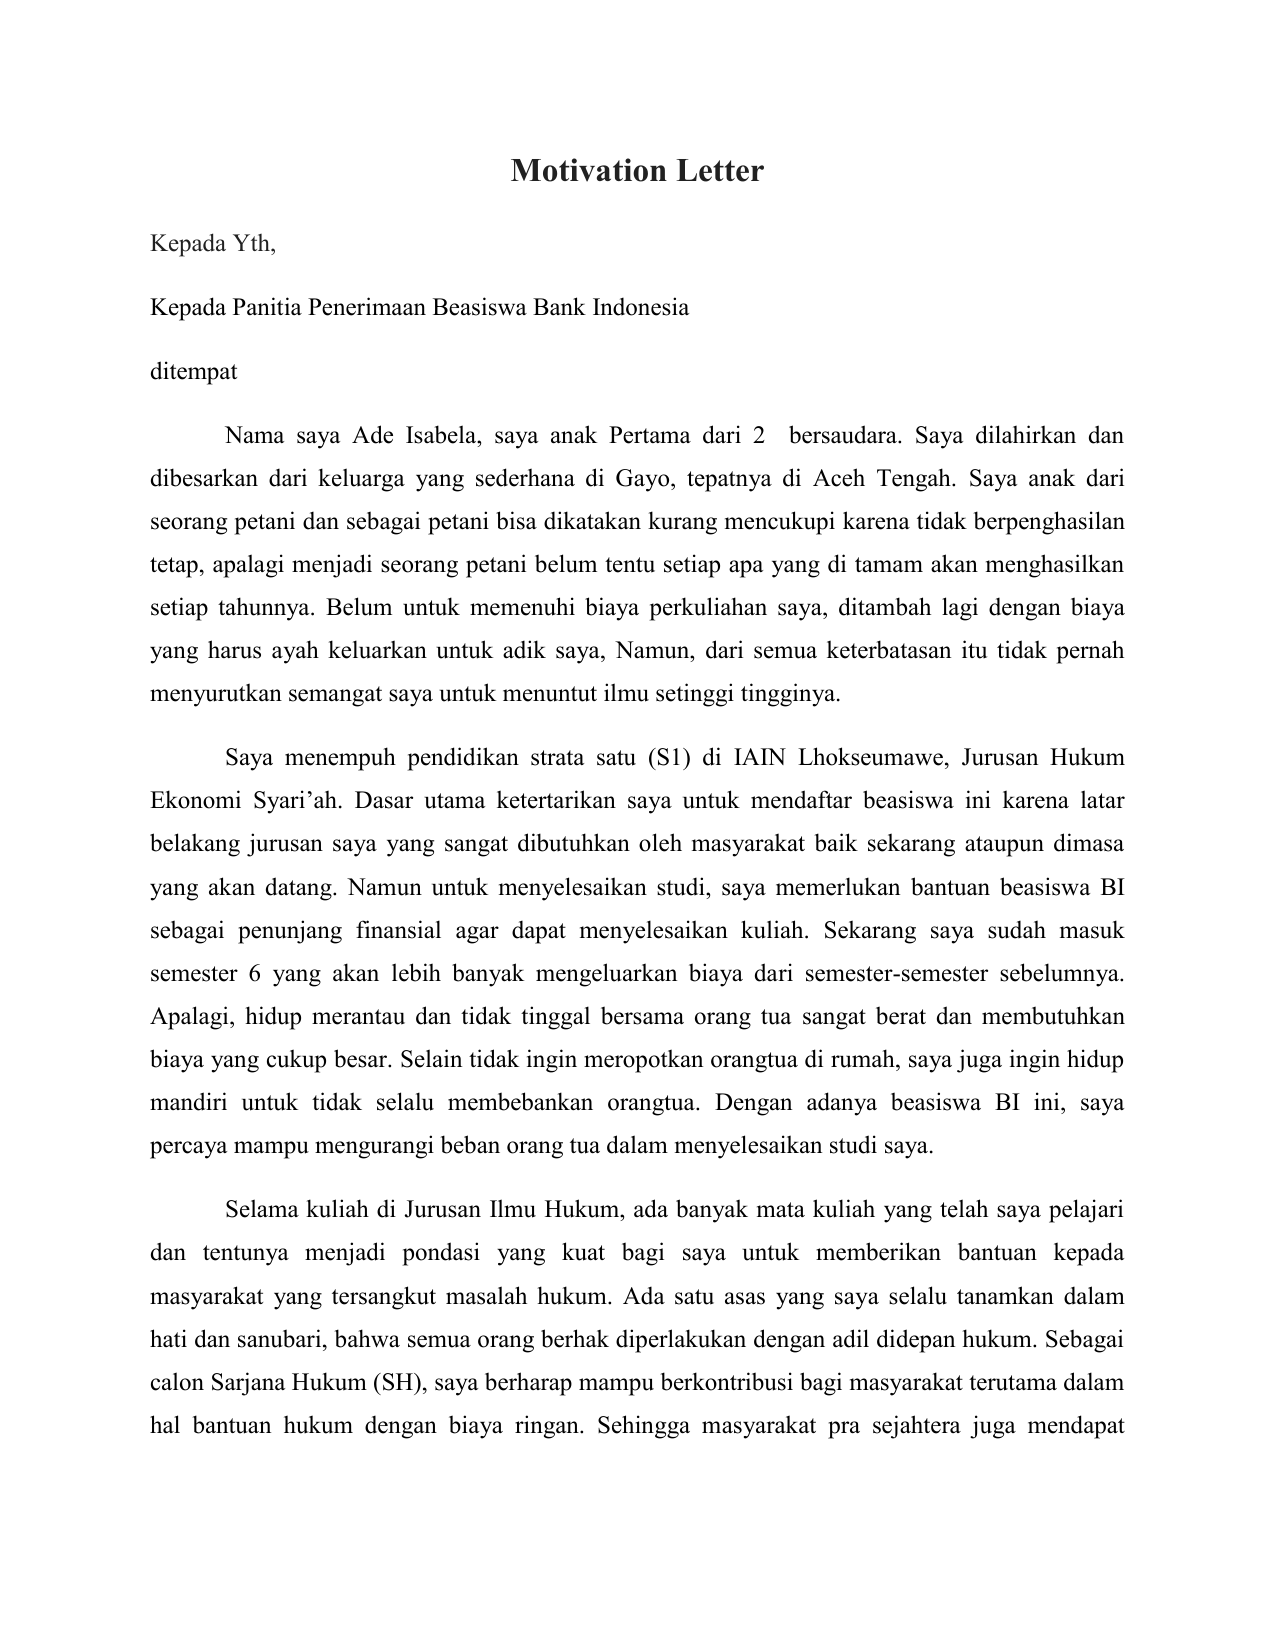 Contoh Essay Beasiswa Bank Indonesia Materi Pendidikan